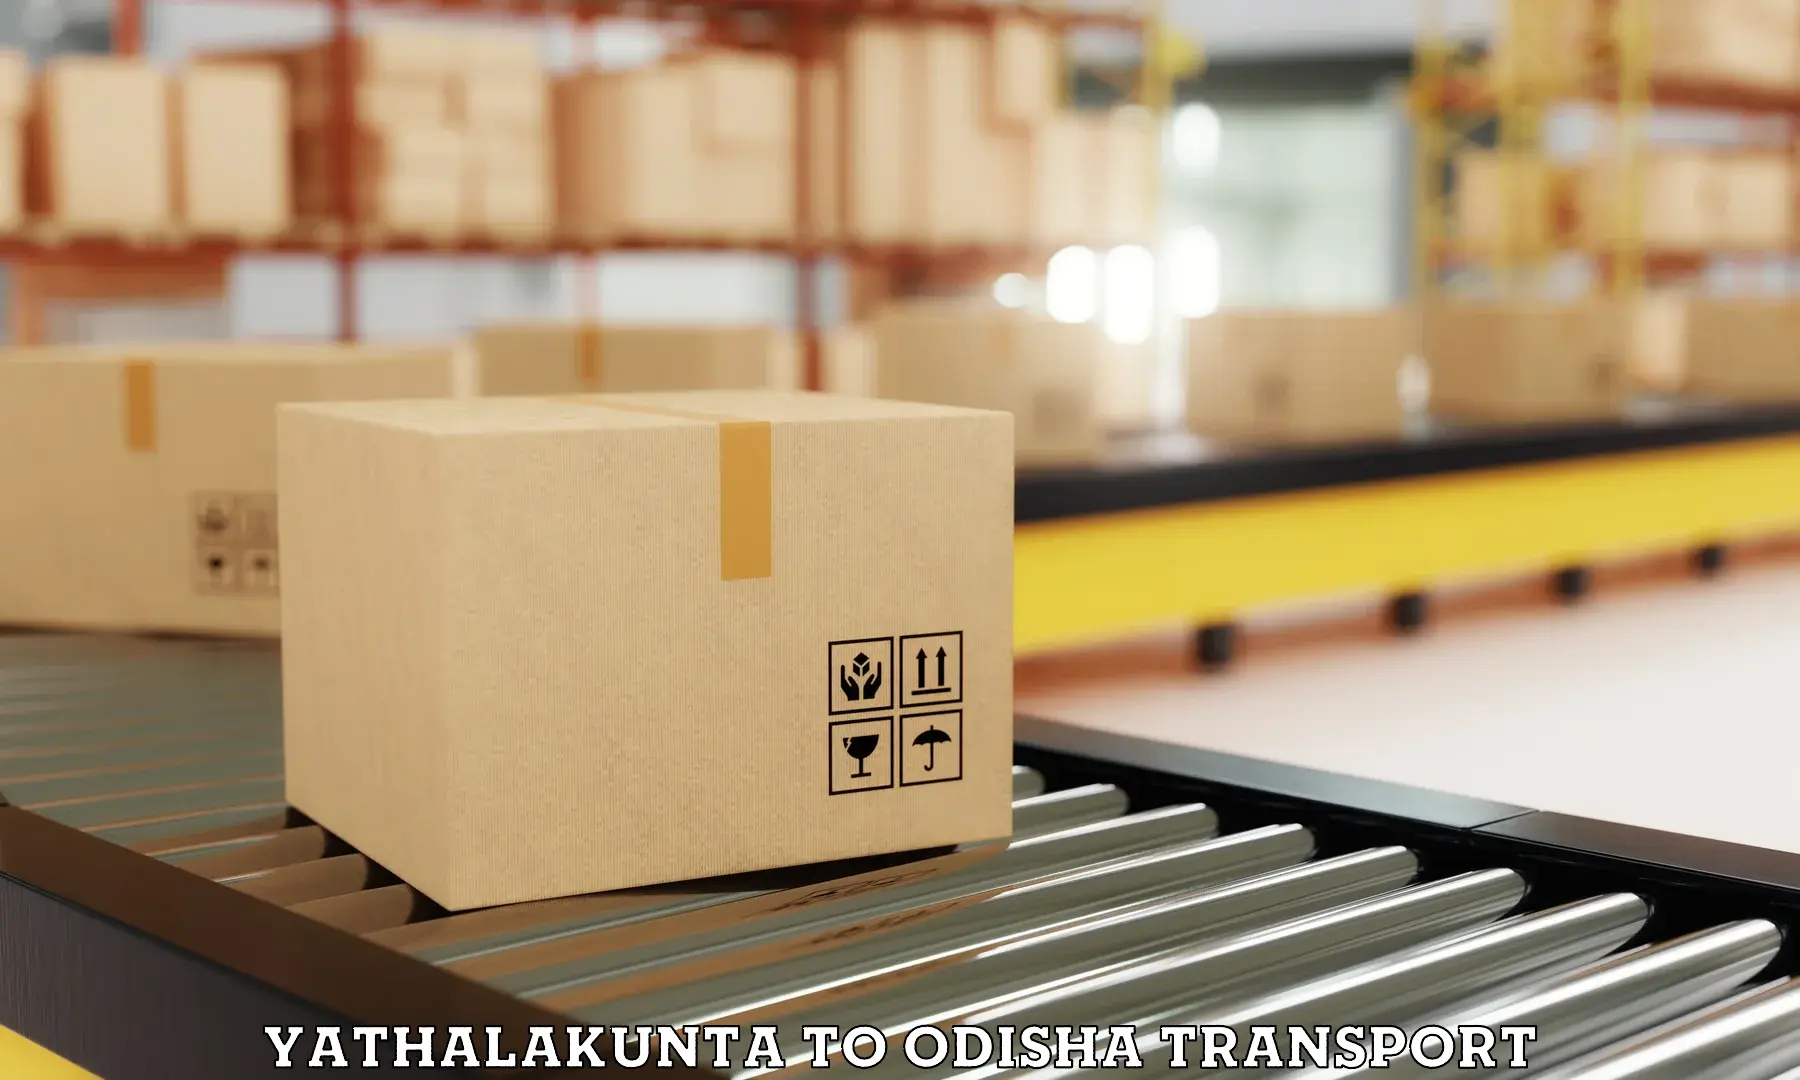 Pick up transport service Yathalakunta to Ghuntagadia